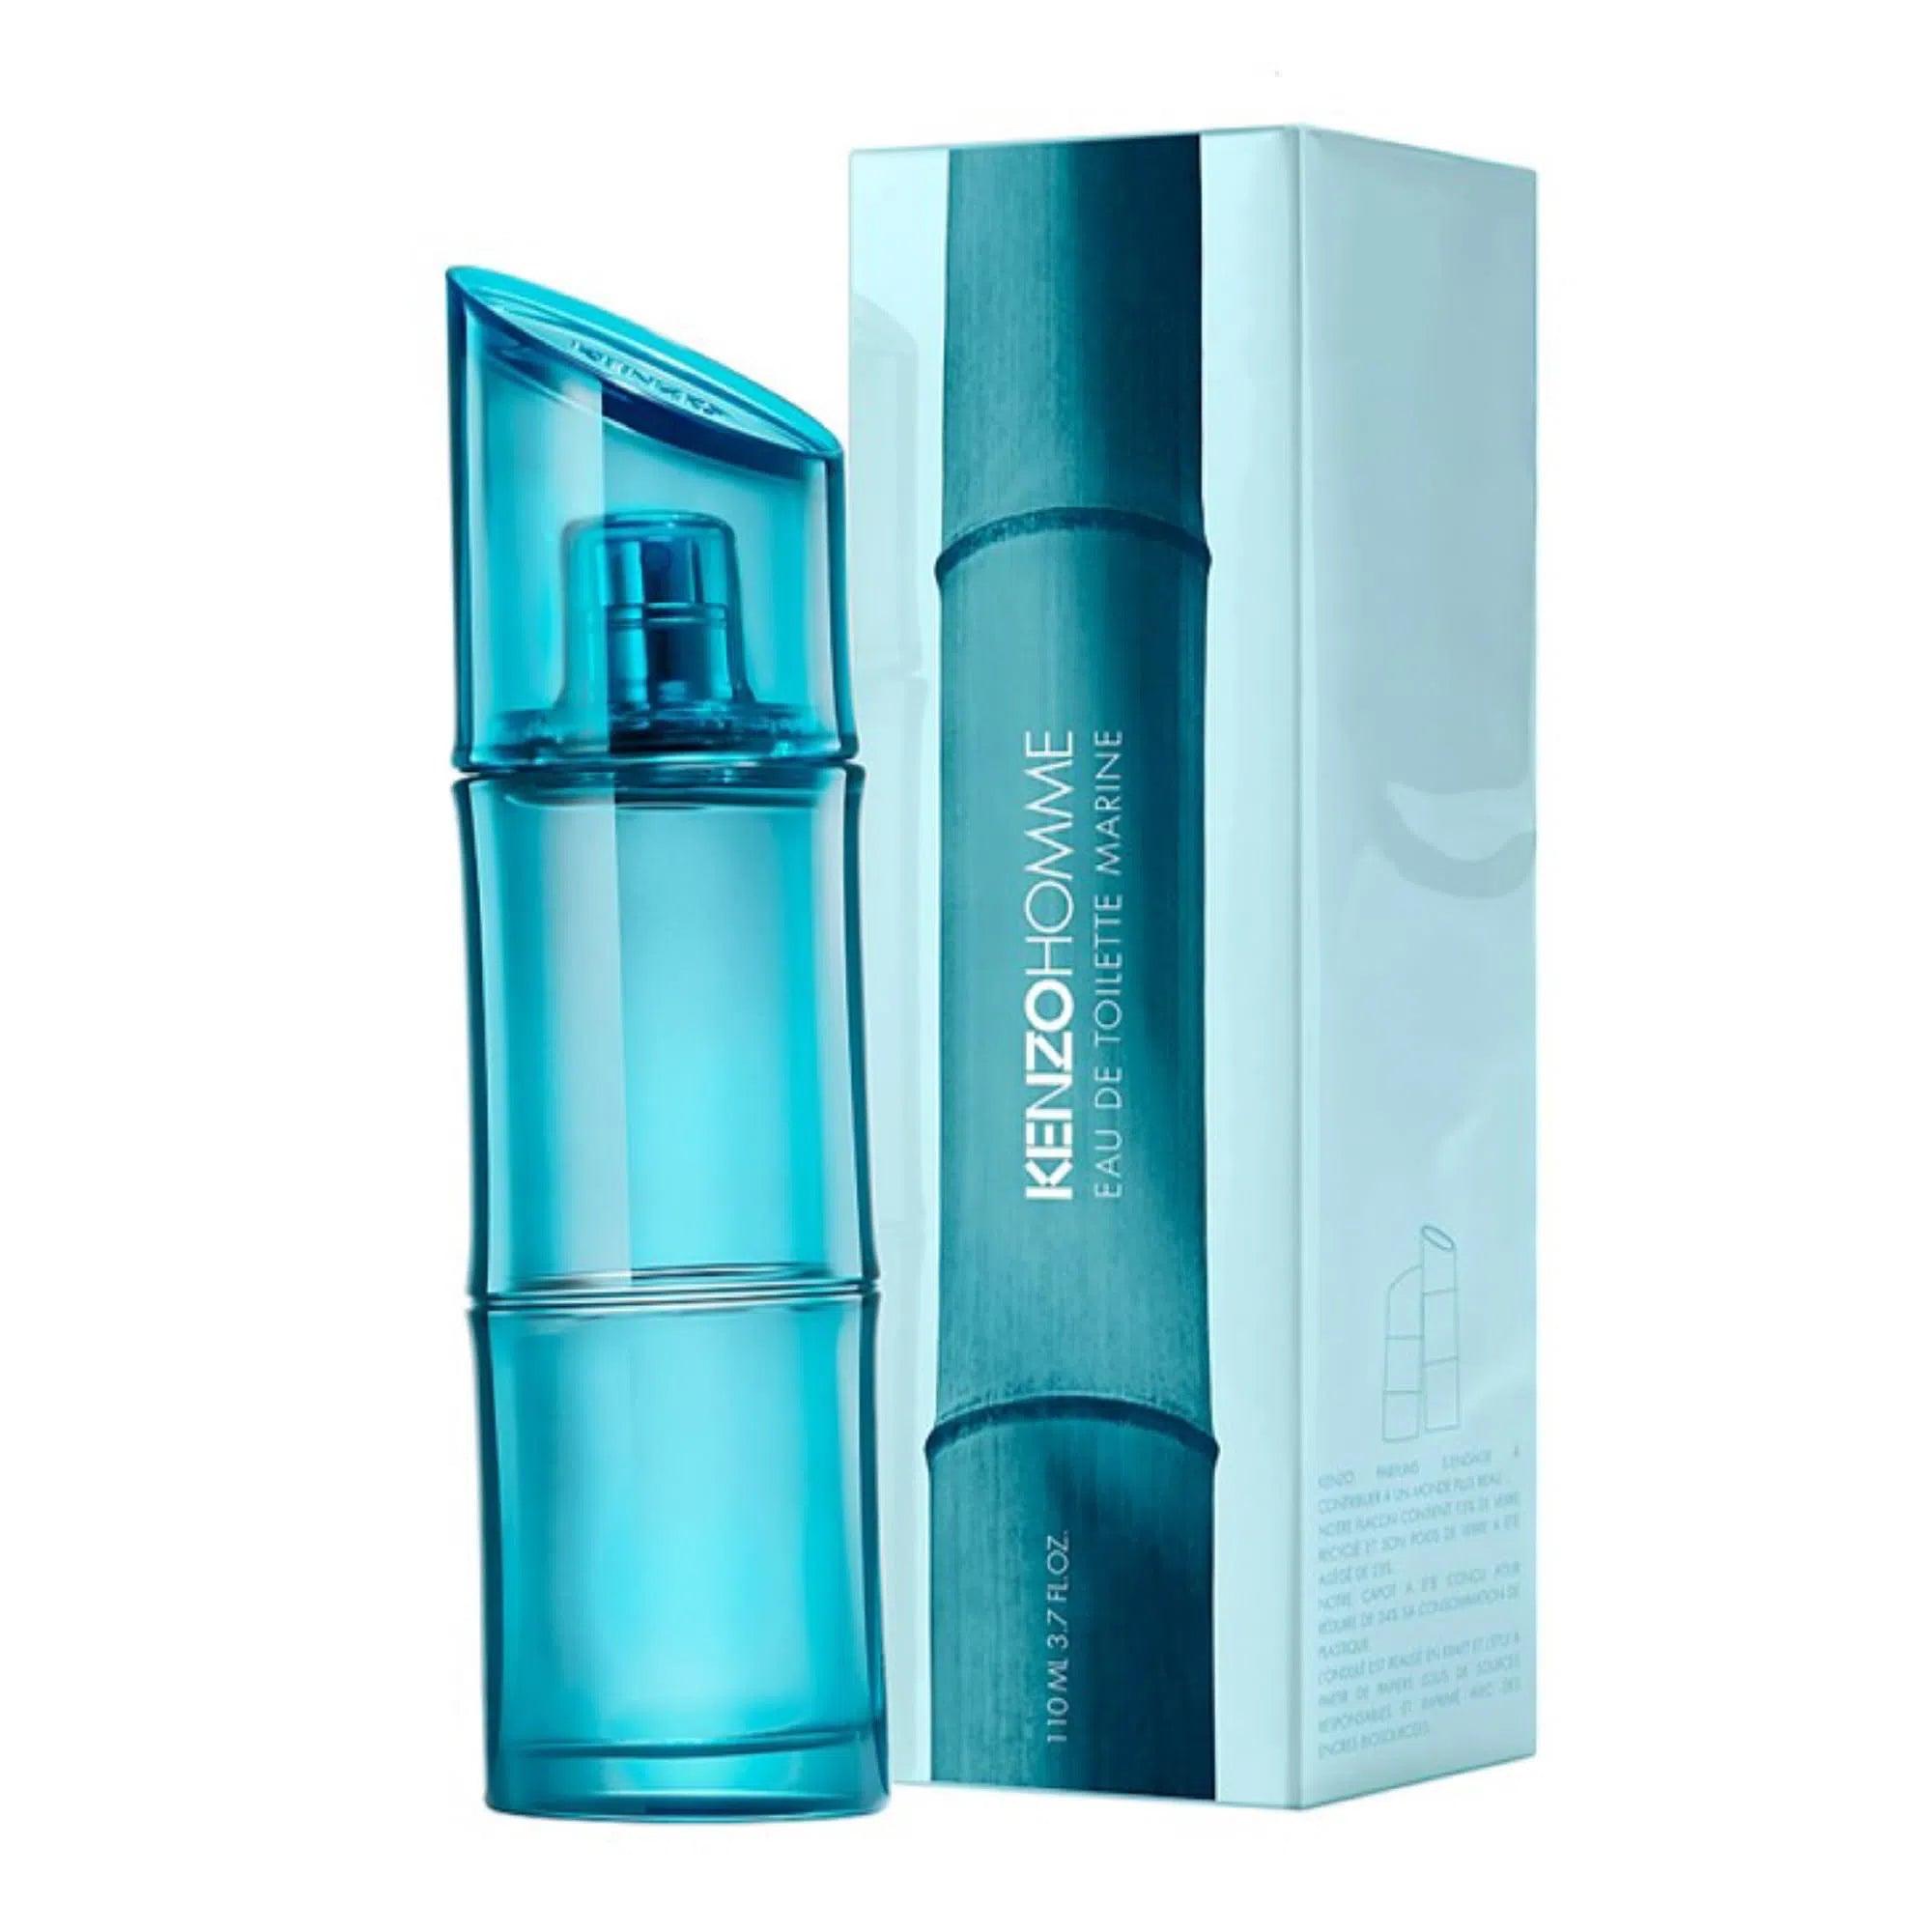 Perfume Kenzo Homme Marine EDT (M) / 110 ml - 3274872438088- Prive Perfumes Honduras